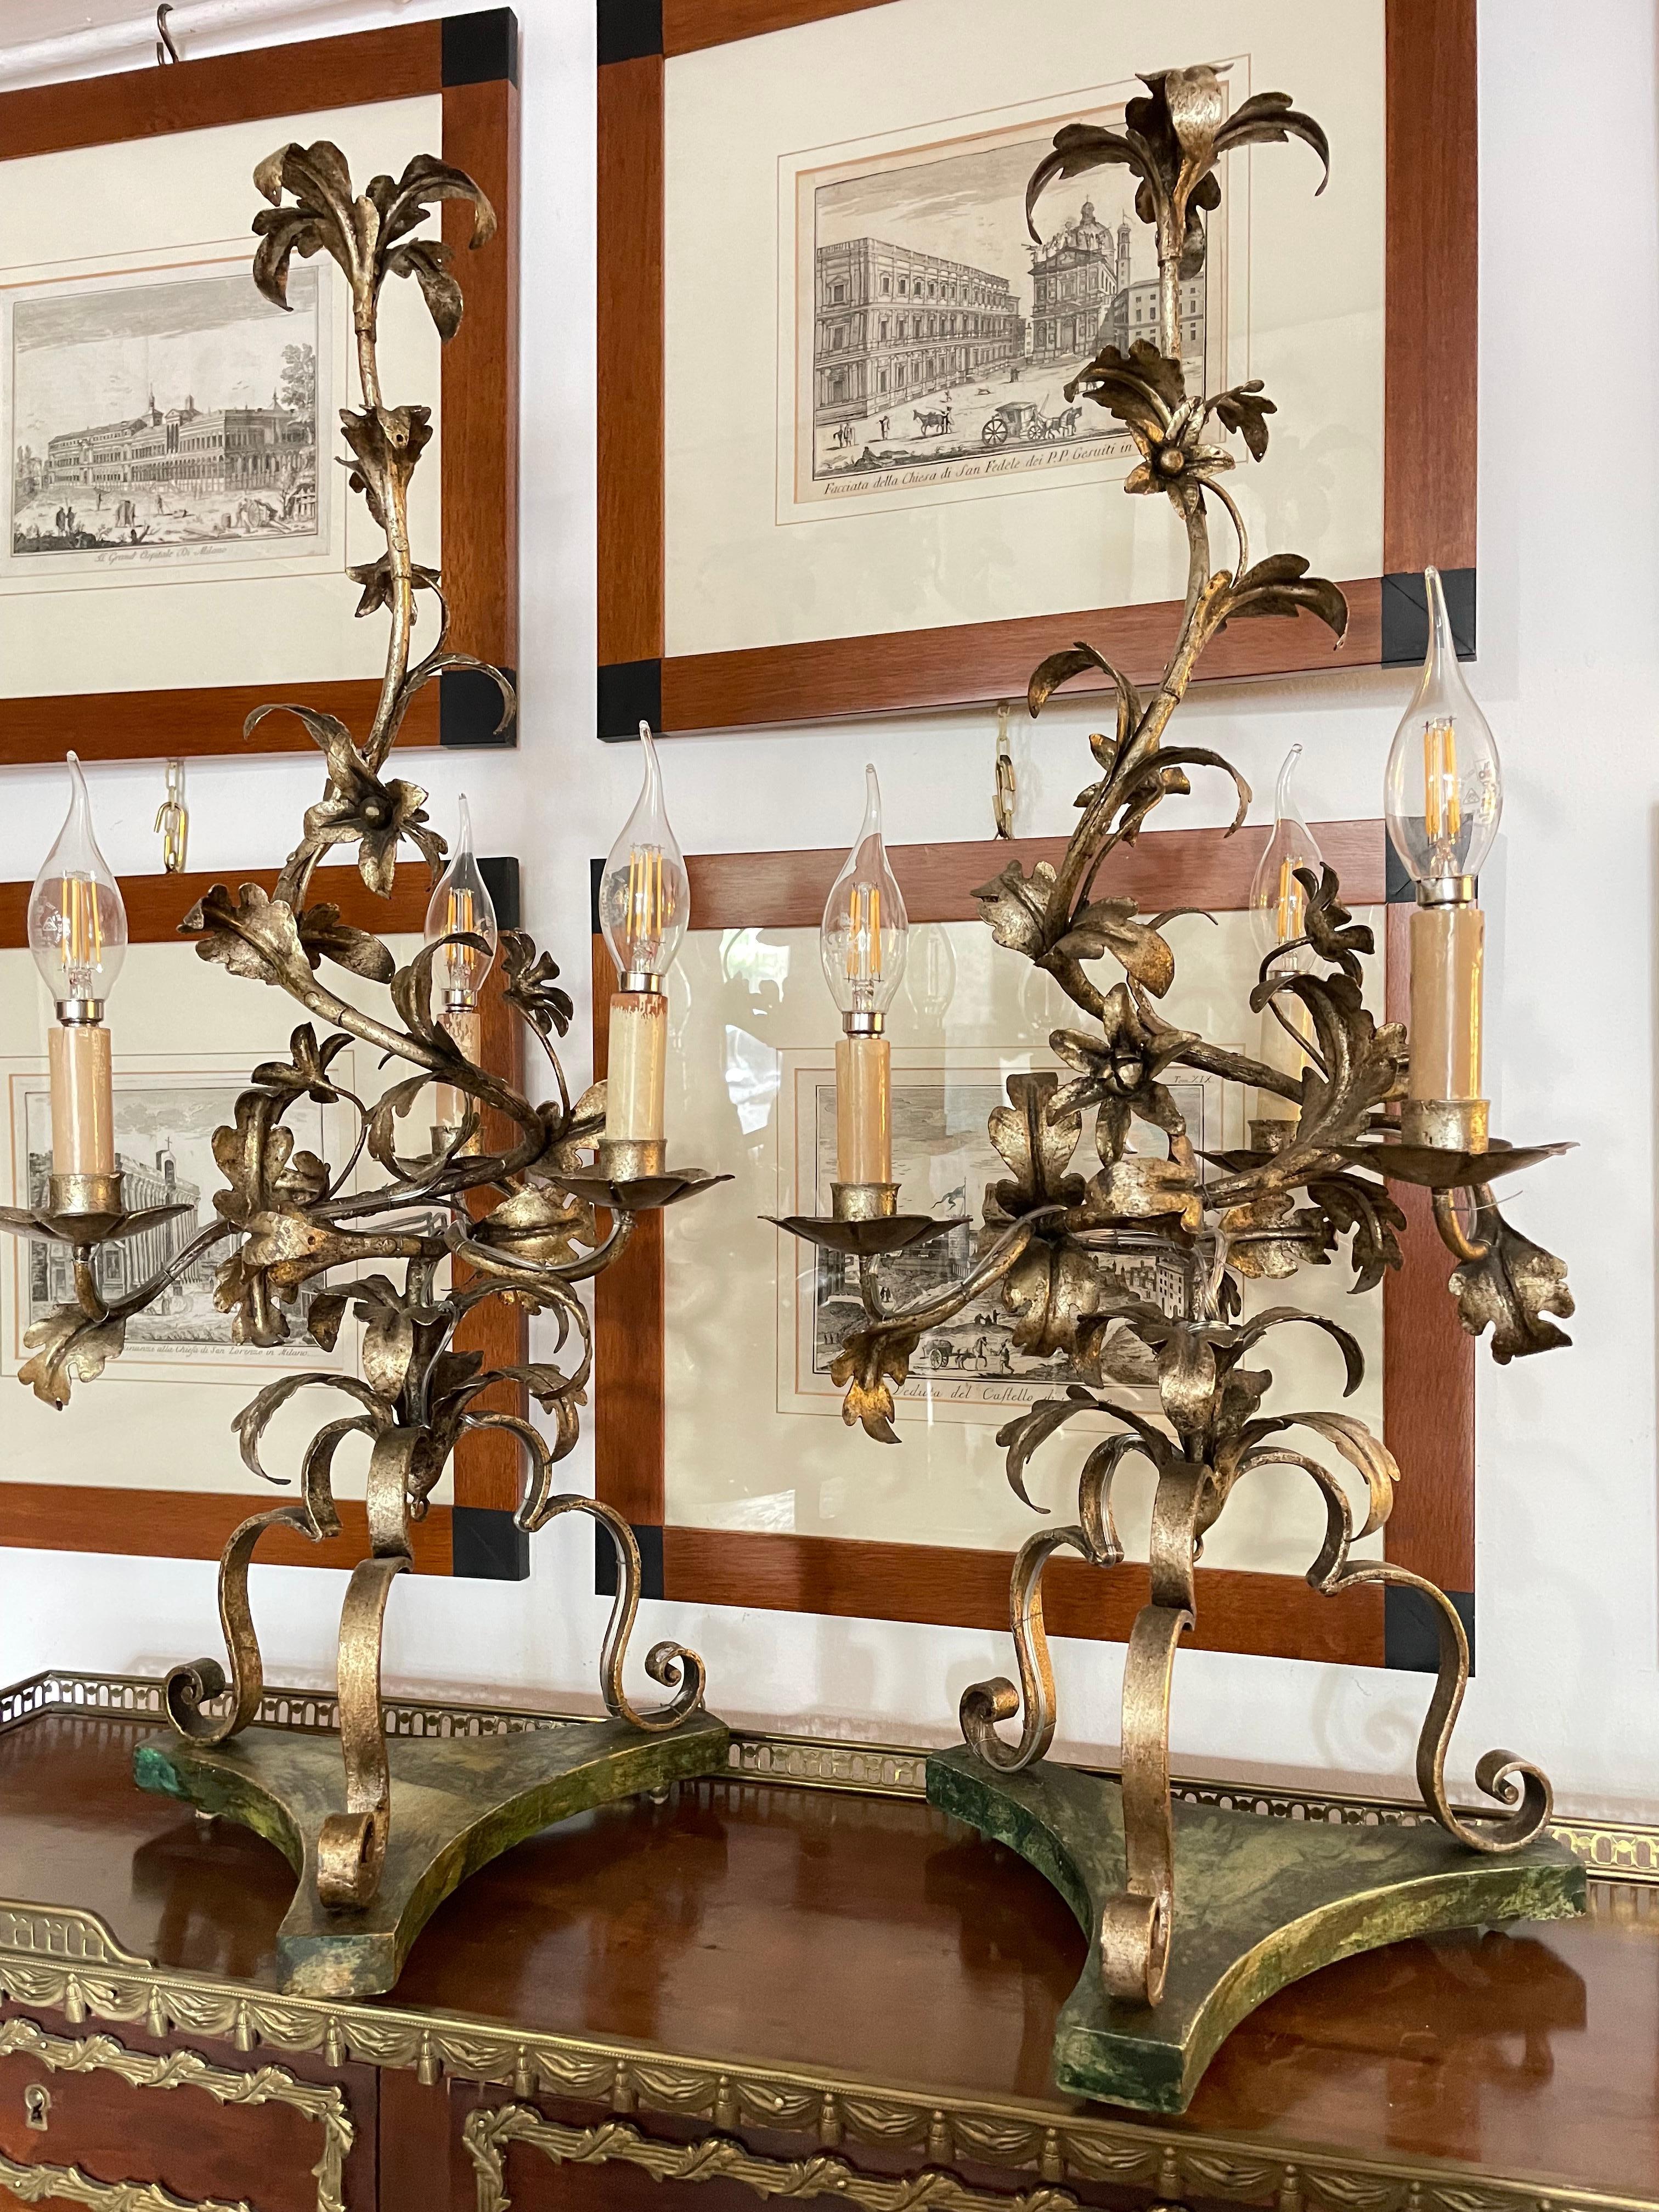 Paire de candélabres italiens en fer forgé du 20e siècle, avec une belle finition chaude en feuille d'argent mecca, deux lampes de table à trois lumières à motifs floraux et feuillus, posées sur des bases en bois façonnées avec une finition en faux